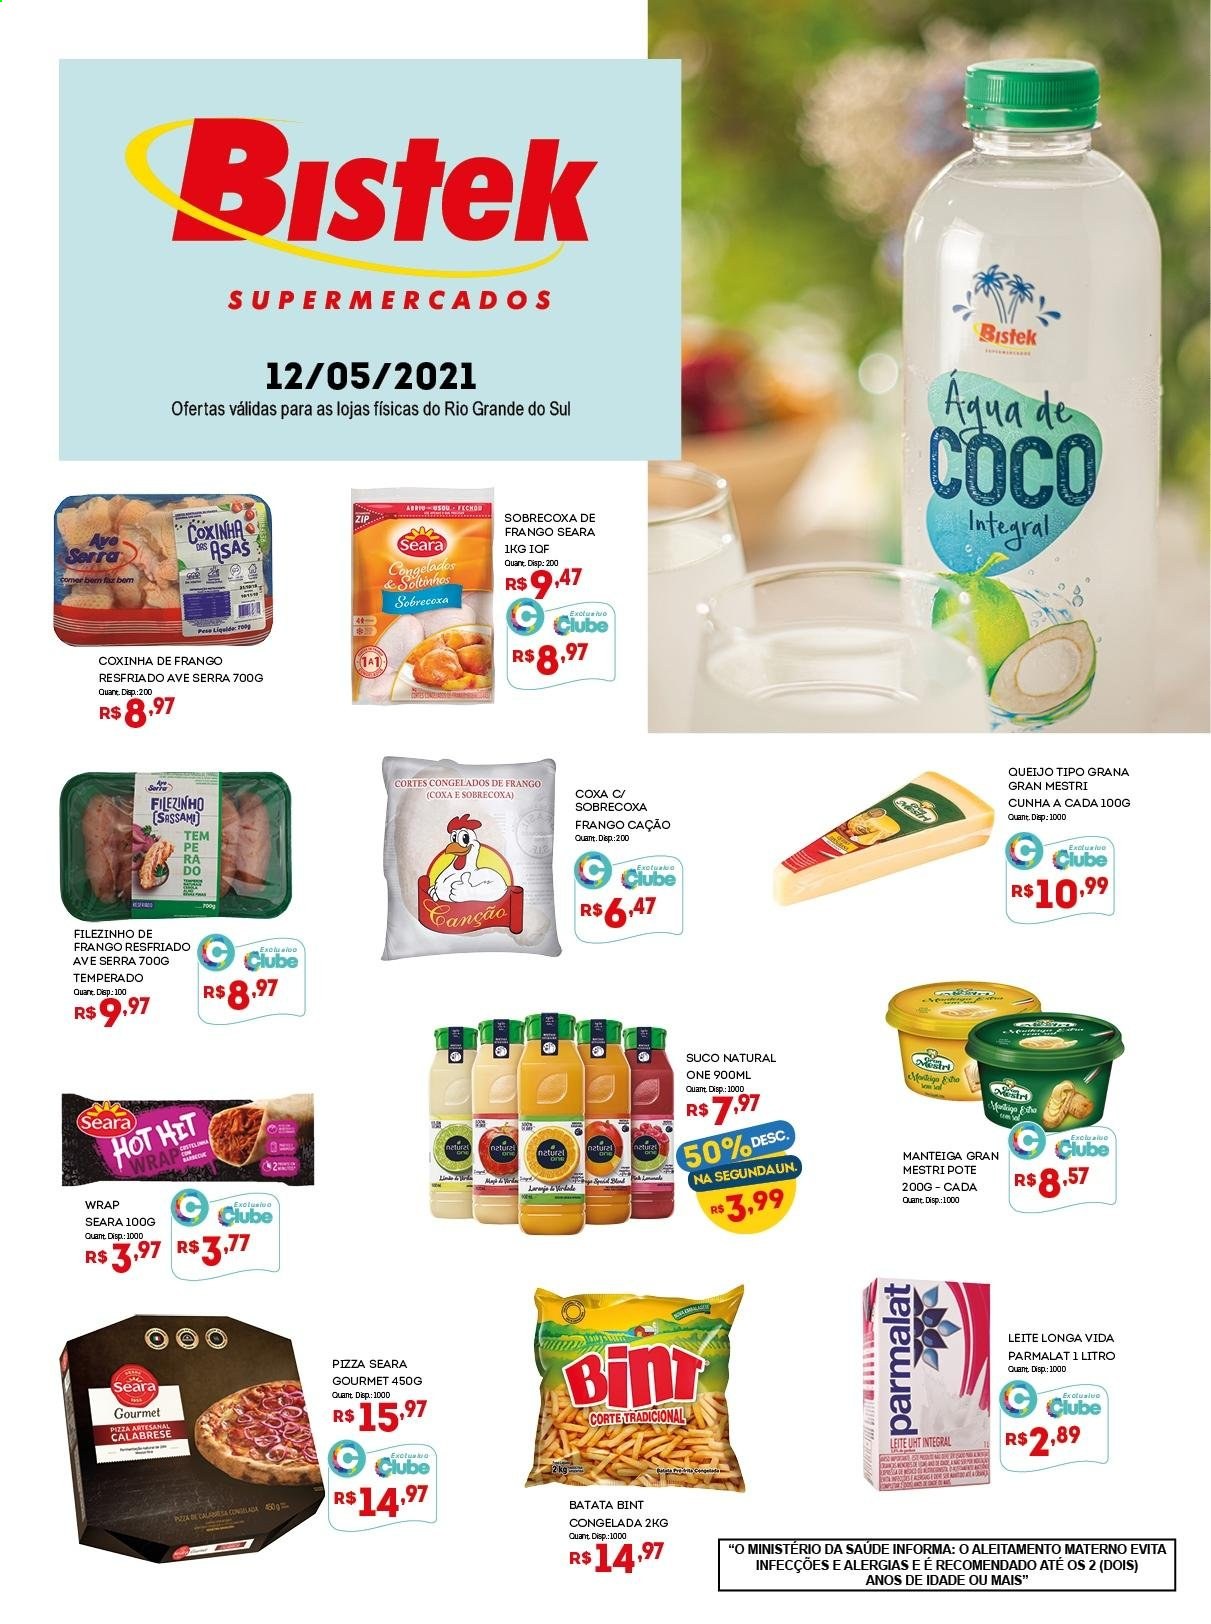 thumbnail - Folheto Bistek Supermercados - 12/05/2021 - 12/05/2021 - Produtos em promoção - batata, sobrecoxa, filé de frango, perna de frango, pizza, queijo, leite, Longa vida, manteiga, suco. Página 1.